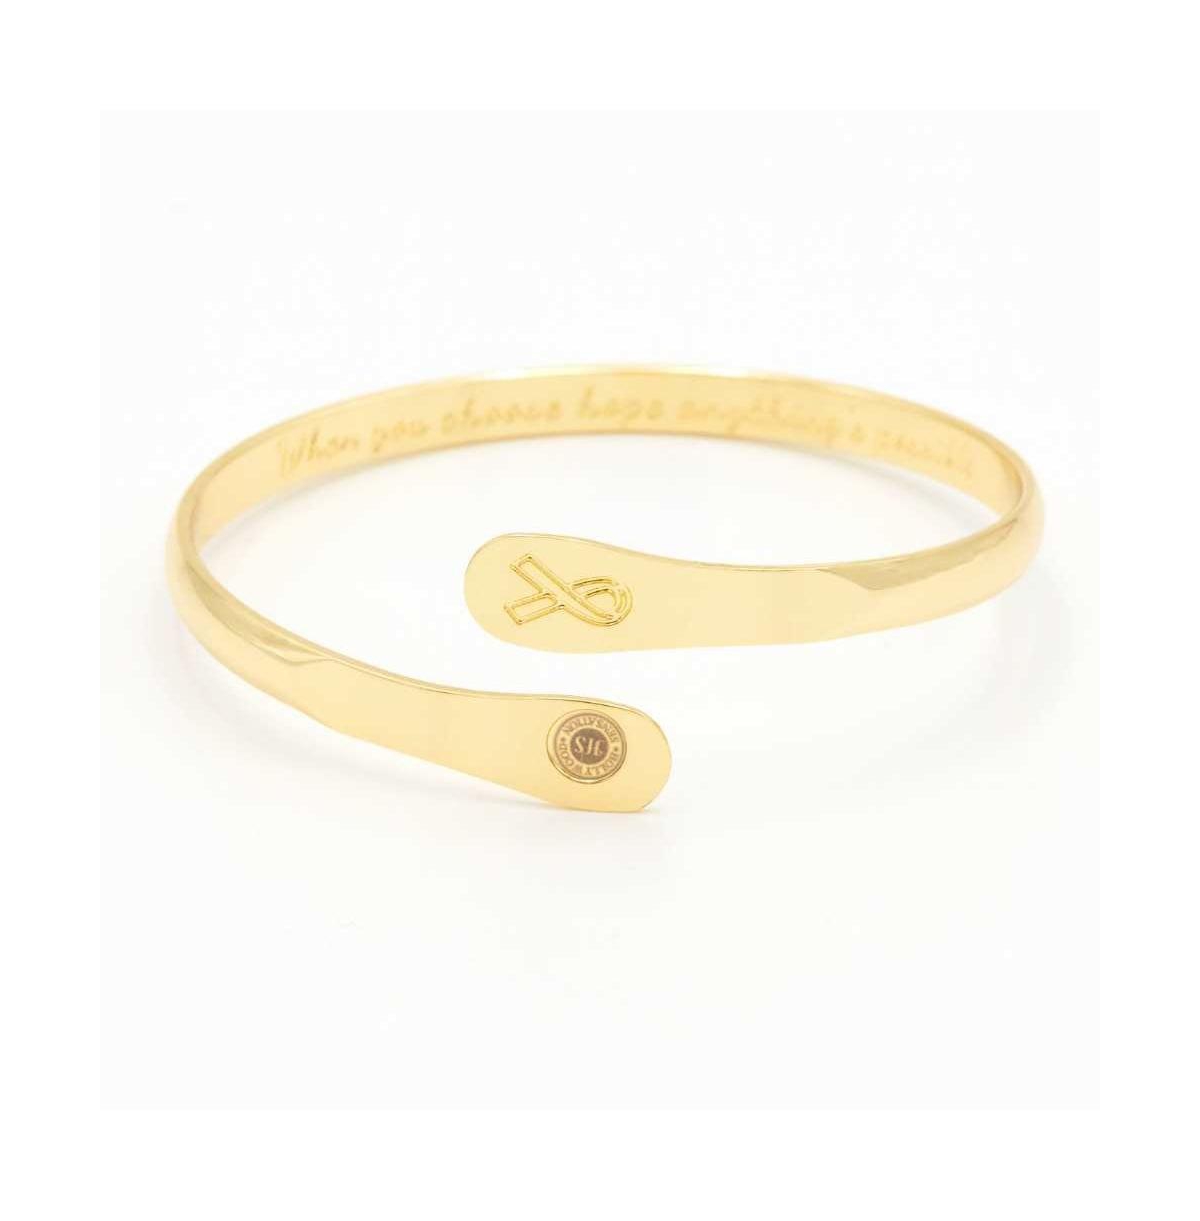 Cancer Awareness Bracelets, Engraved Bracelets - Gold